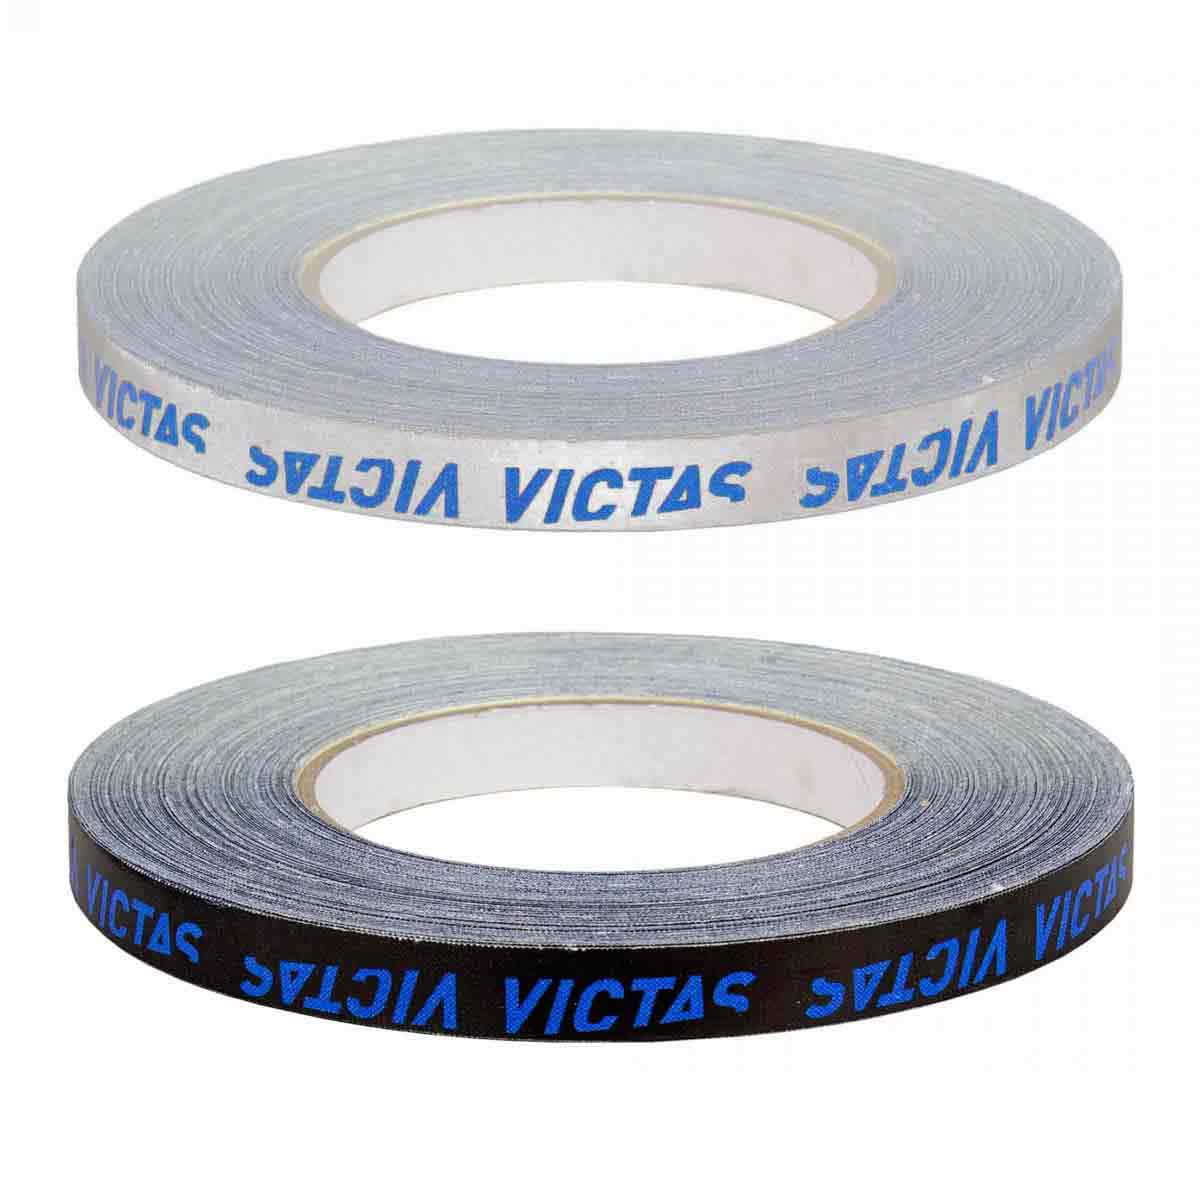 Victas Kantenband 12mm/50m schwarz/blau